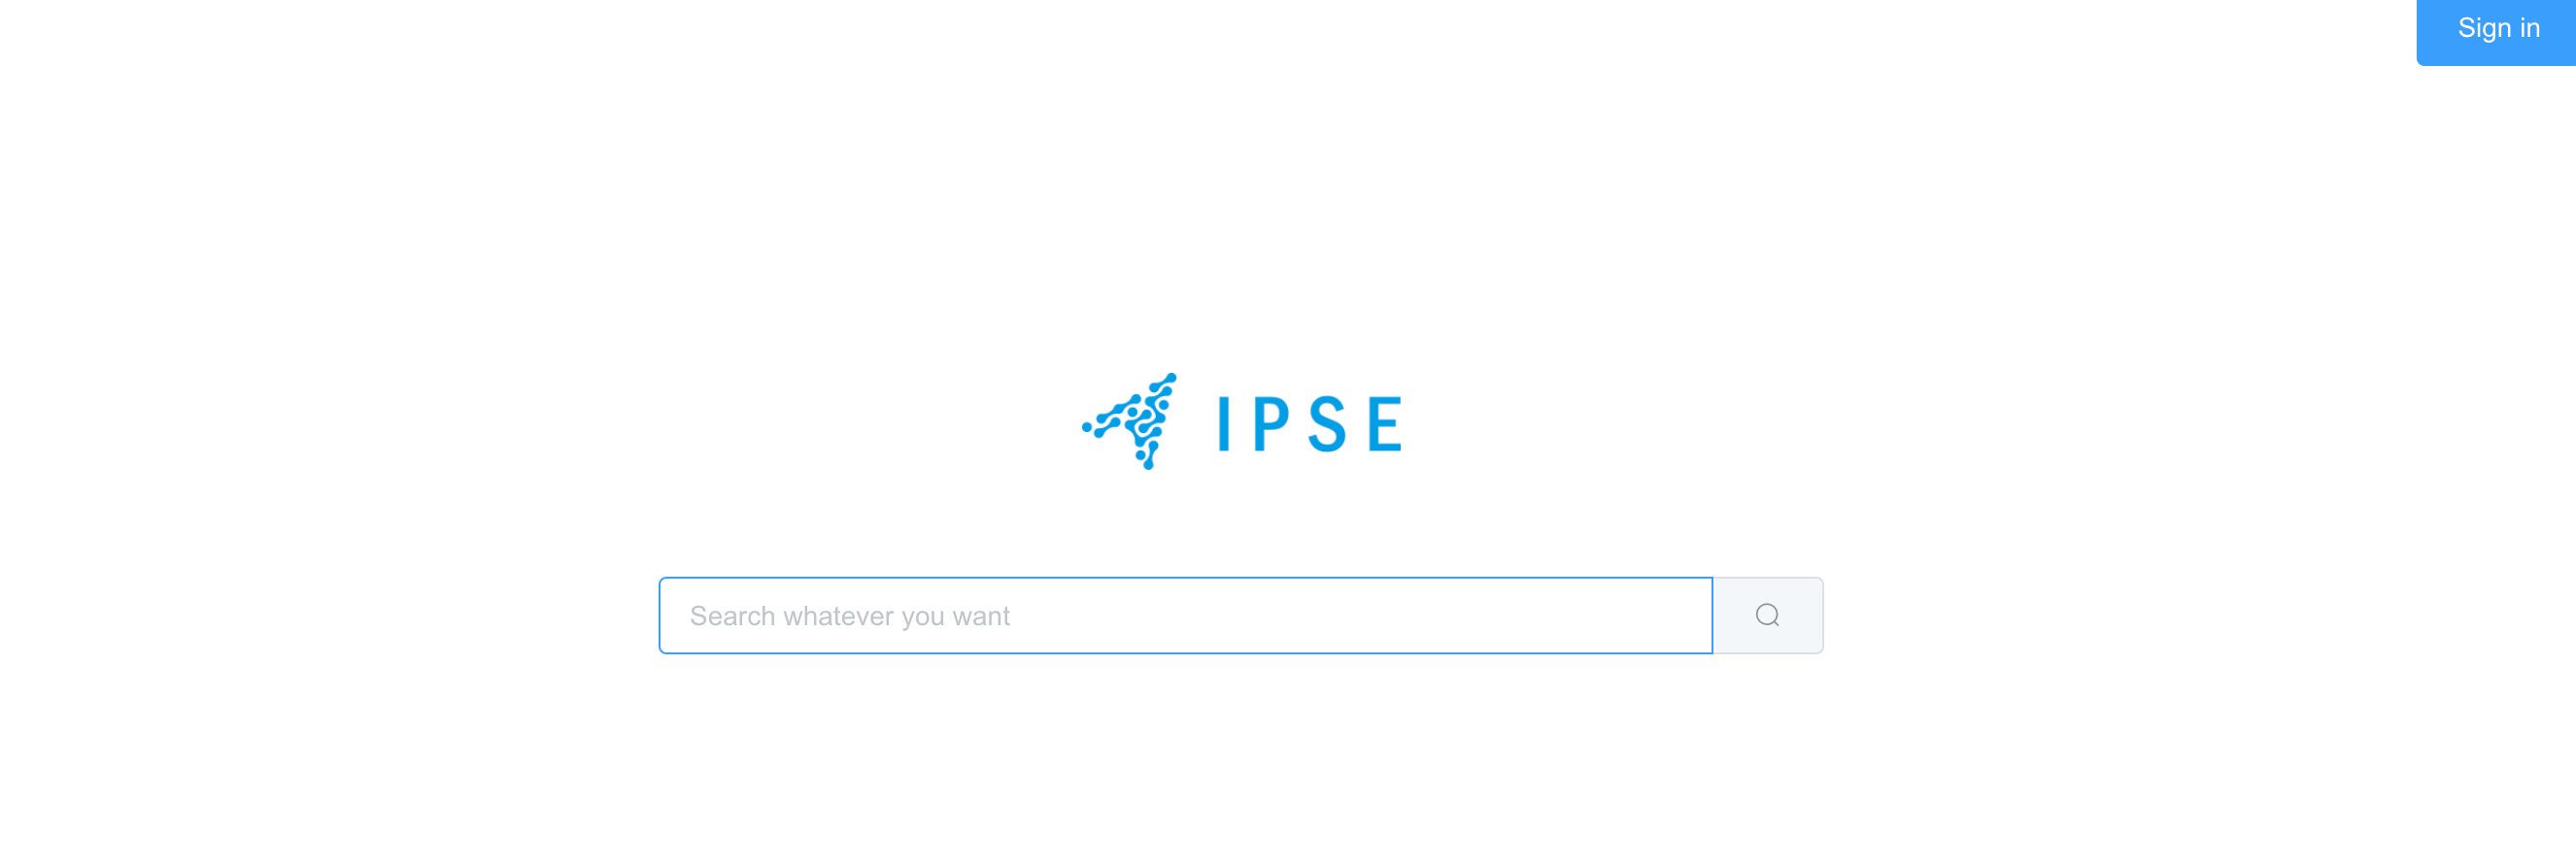 IPSE dapp aplikacja blockchain